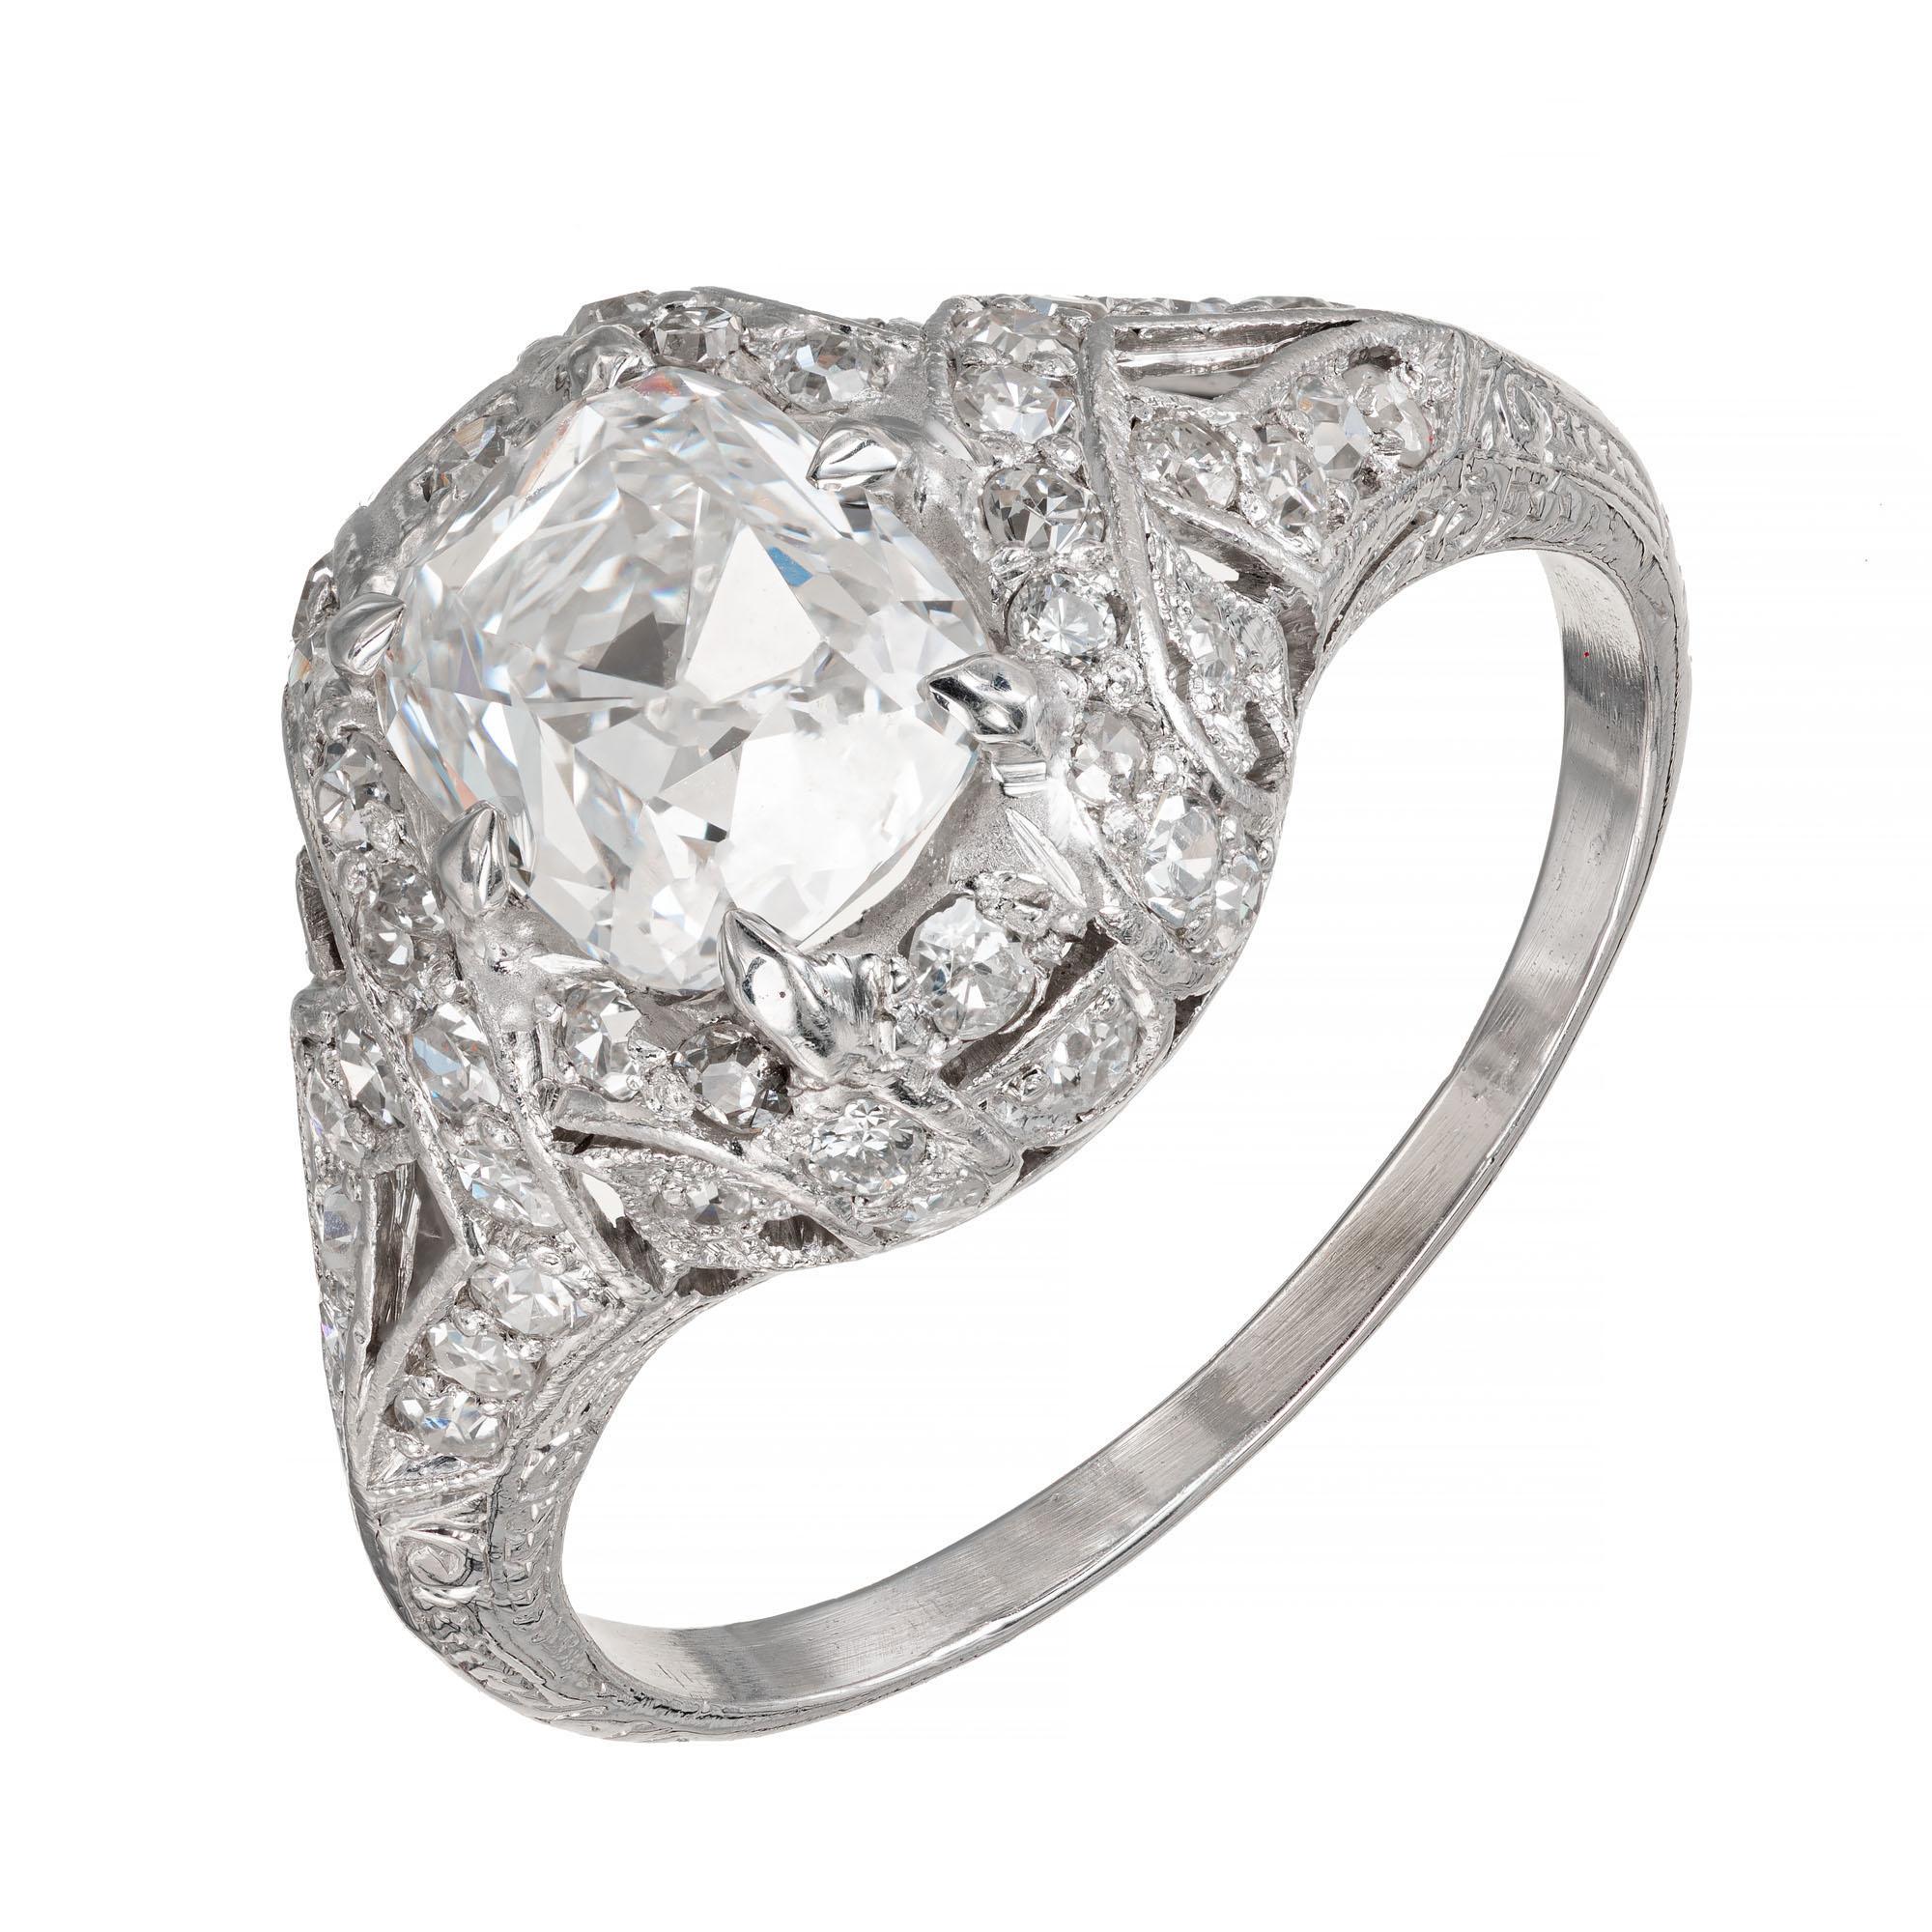 1900 Verlobungsring aus Platin, durchbohrt, mit Diamanten besetzt. GIA-zertifizierter Mittelstein mit 44 einzeln geschliffenen Akzentdiamanten. Runder, eckiger, rechteckiger Diamant im Brillantschliff. Der Stein hat auch eine starke blaue